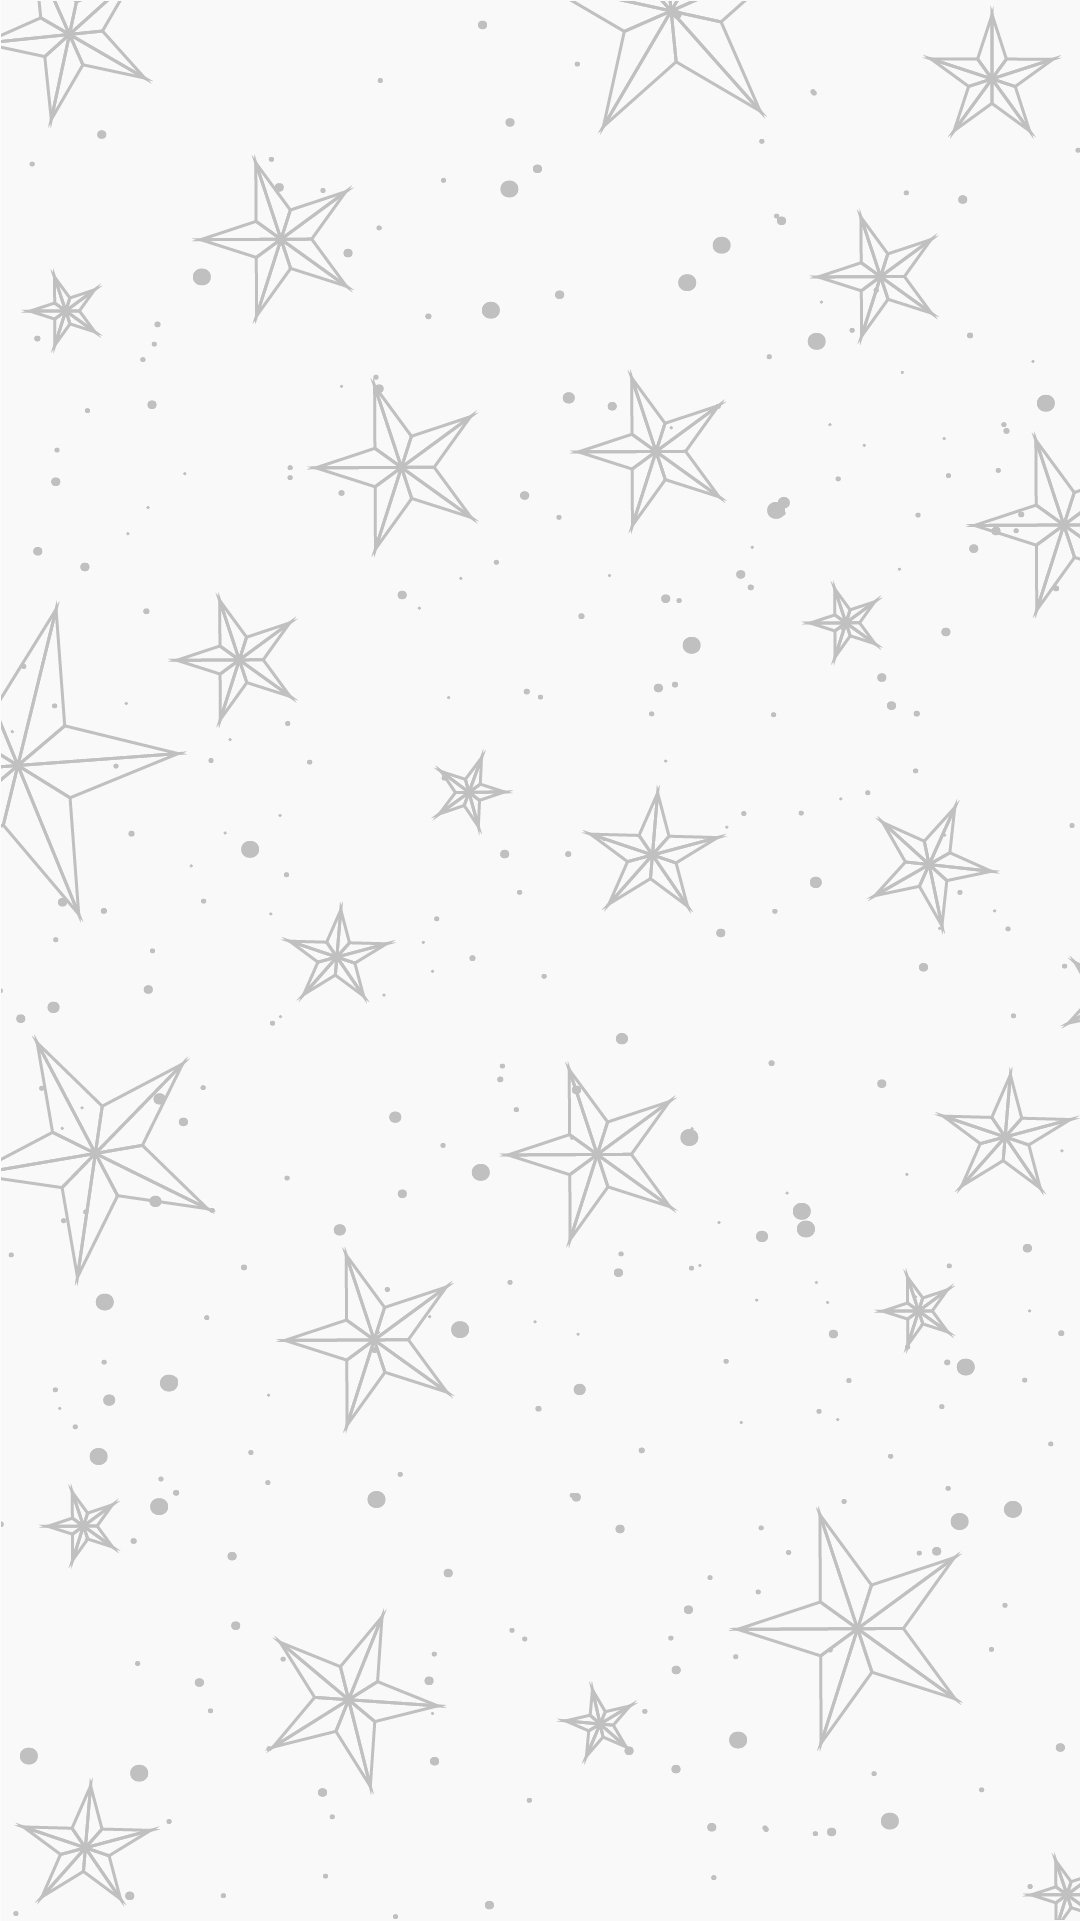 Free White Glitter Heart Background - EPS, Illustrator, JPG, SVG ...